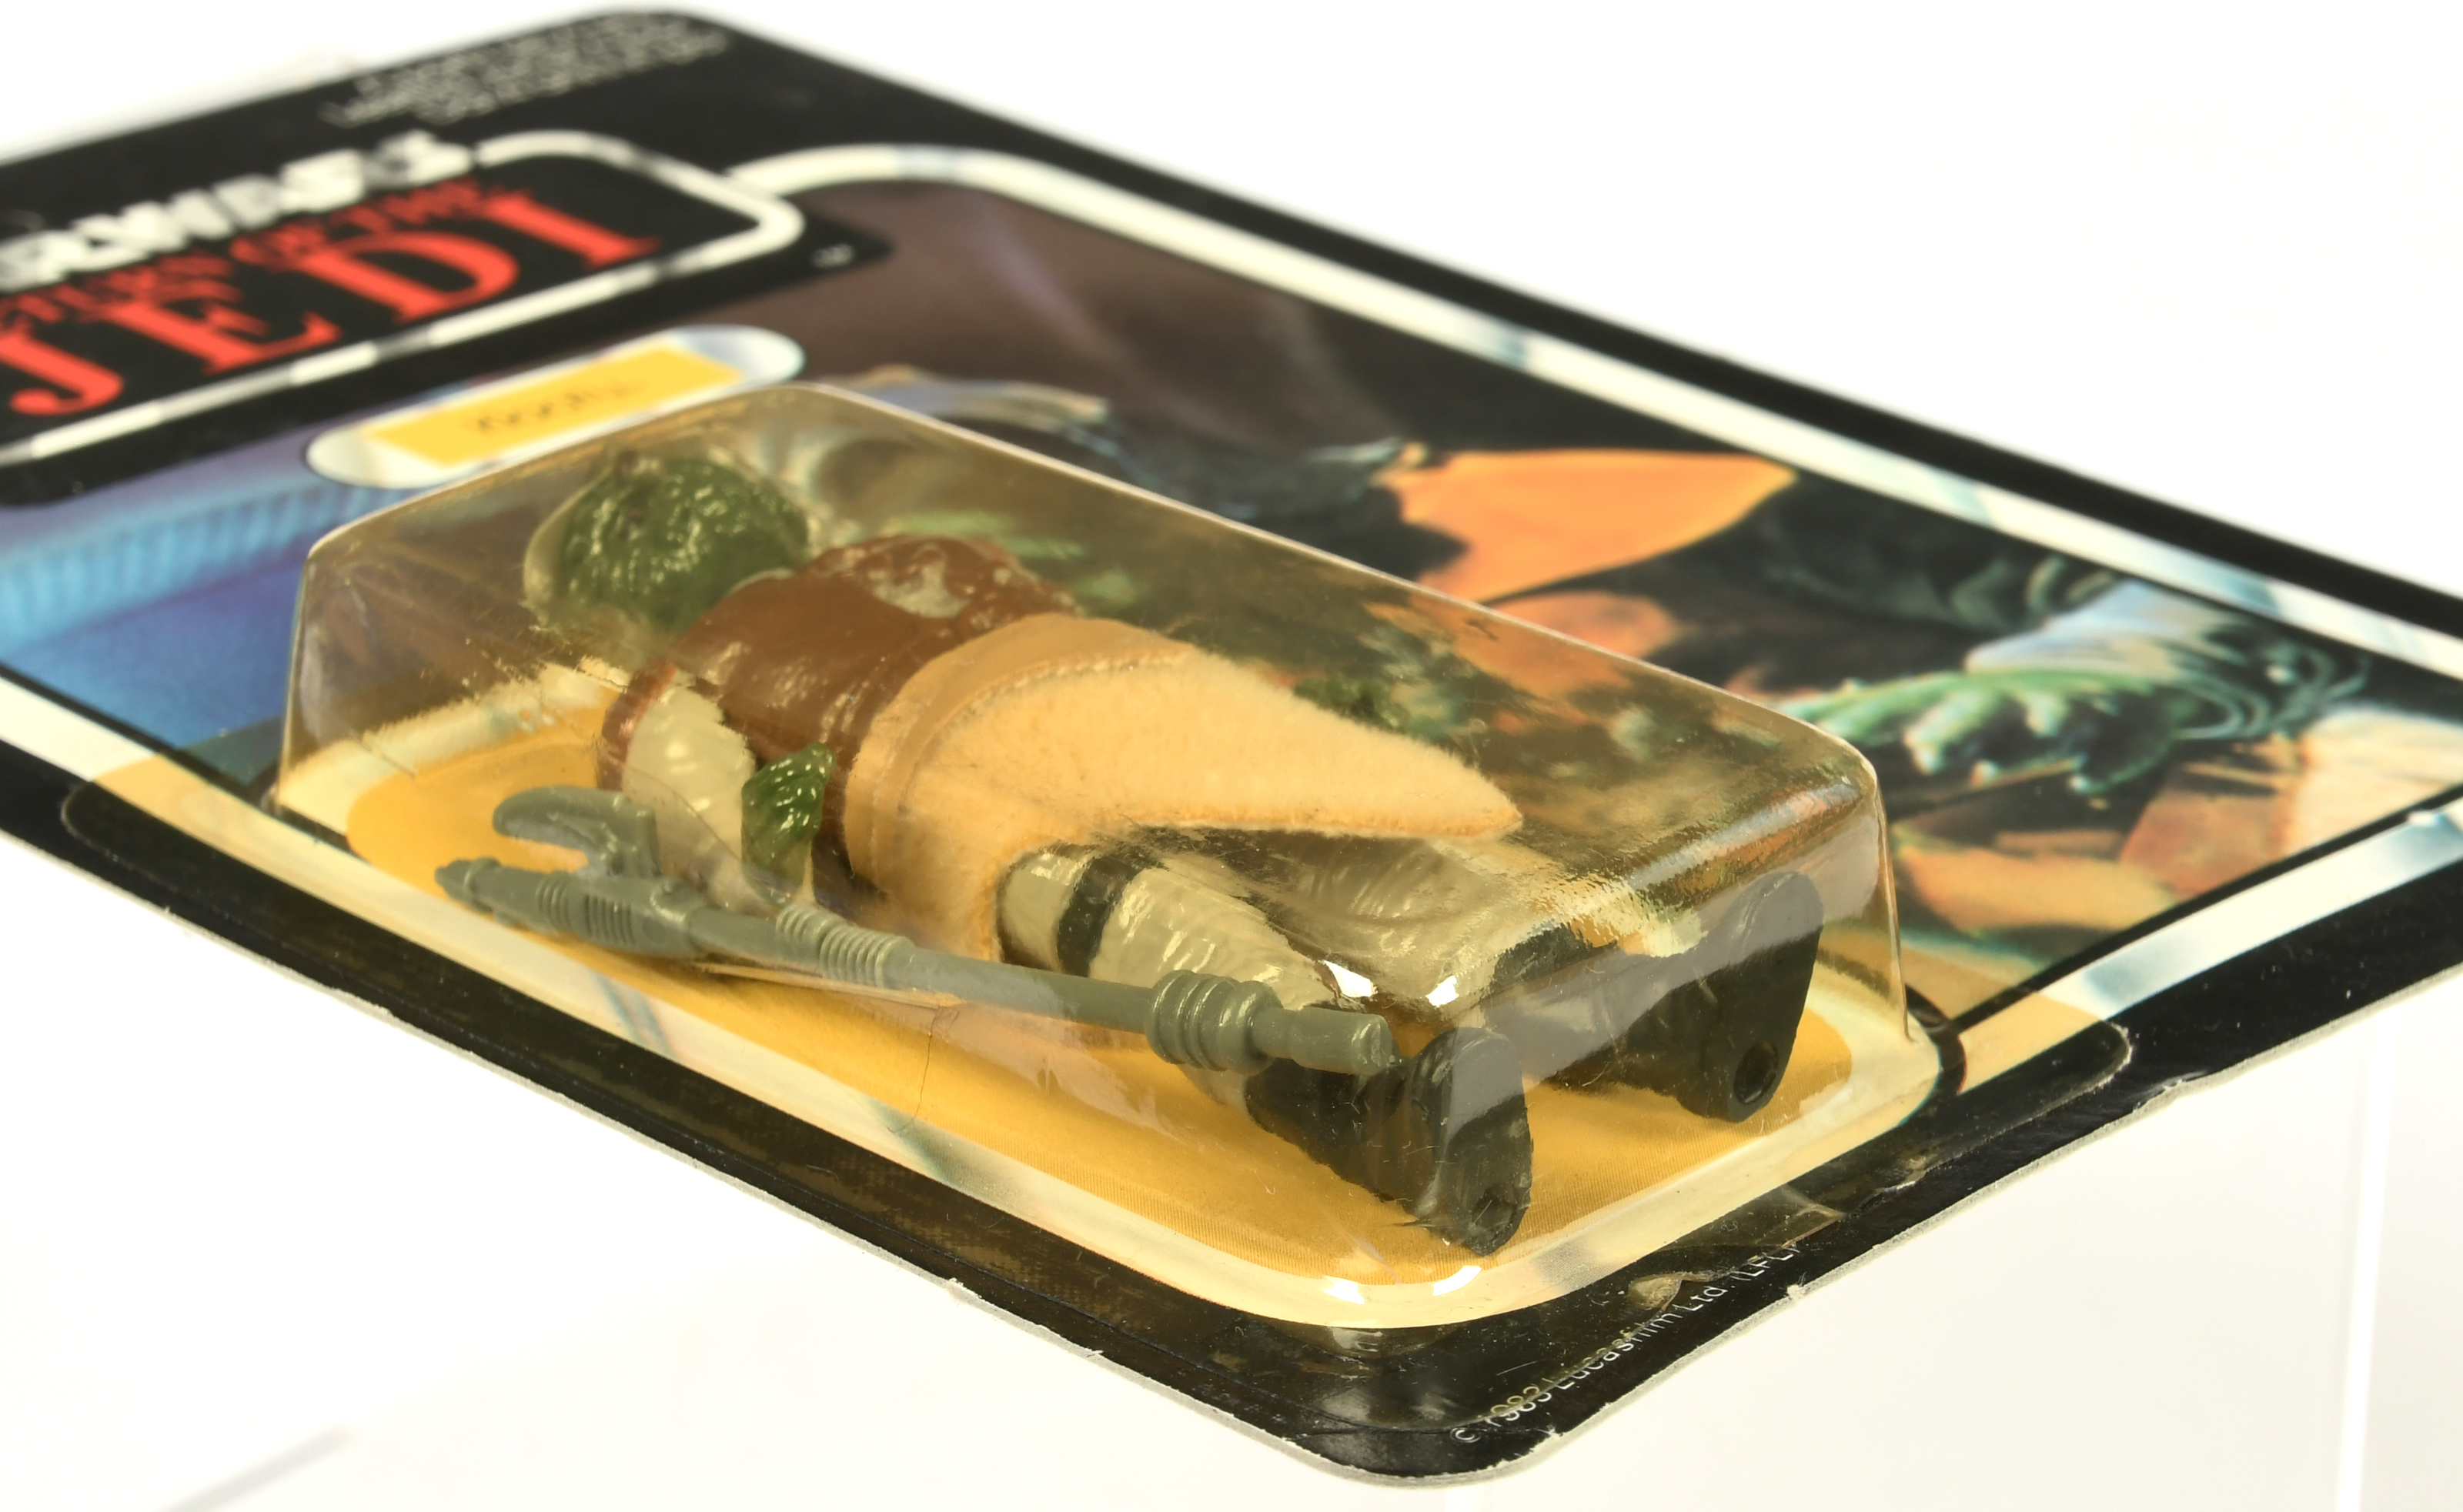 Palitoy Star Wars vintage Return of the Jedi Klaatu 3 3/4" figure MOC - Image 3 of 4